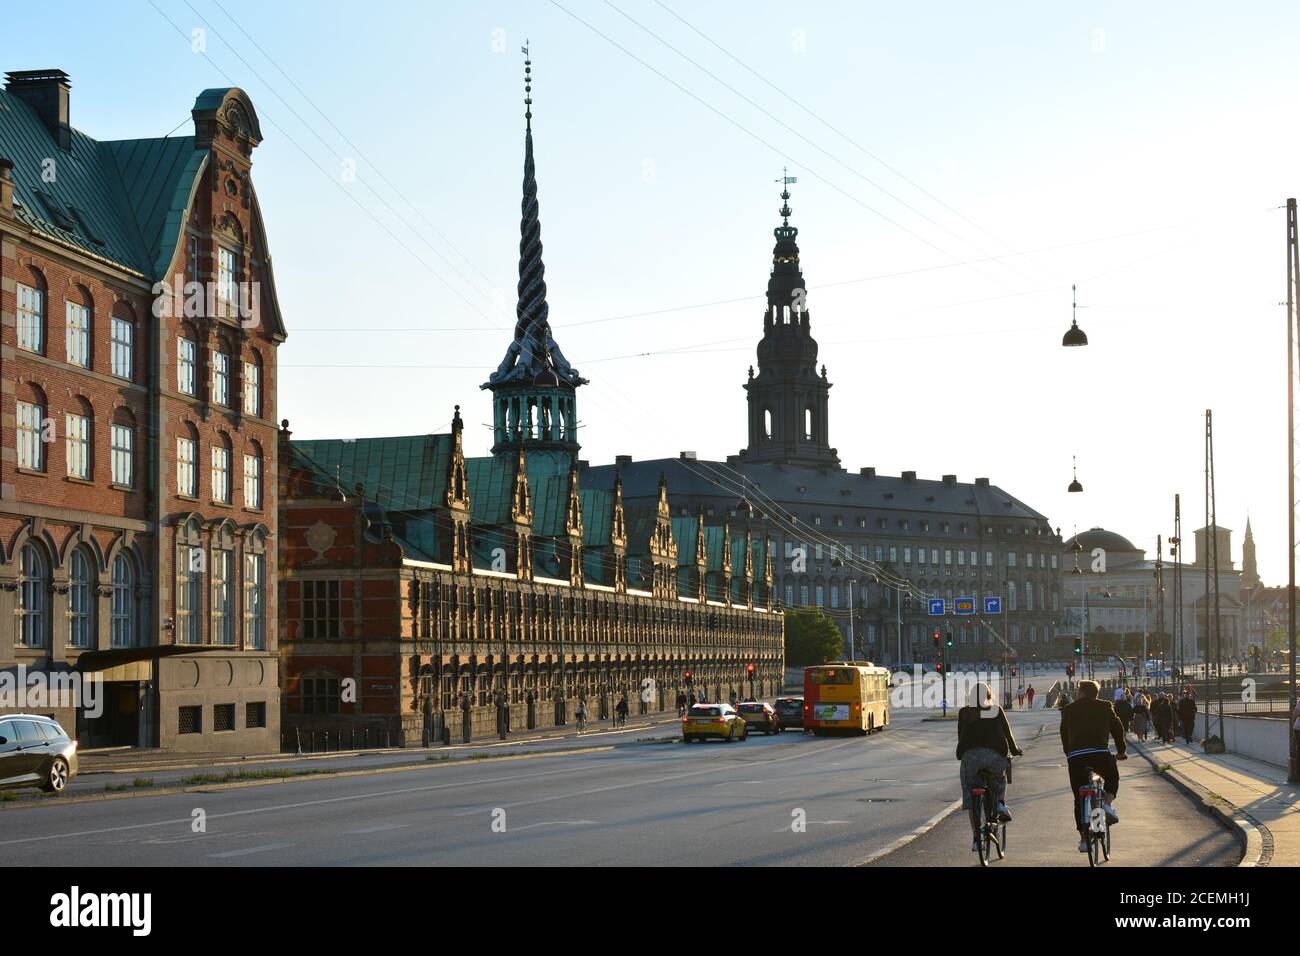 Copenaghen, Danimarca - 17 giugno 2019: La gente passa in bicicletta davanti al Palazzo Christiansborg, sede del Parlamento danese a Copenaghen. Foto Stock